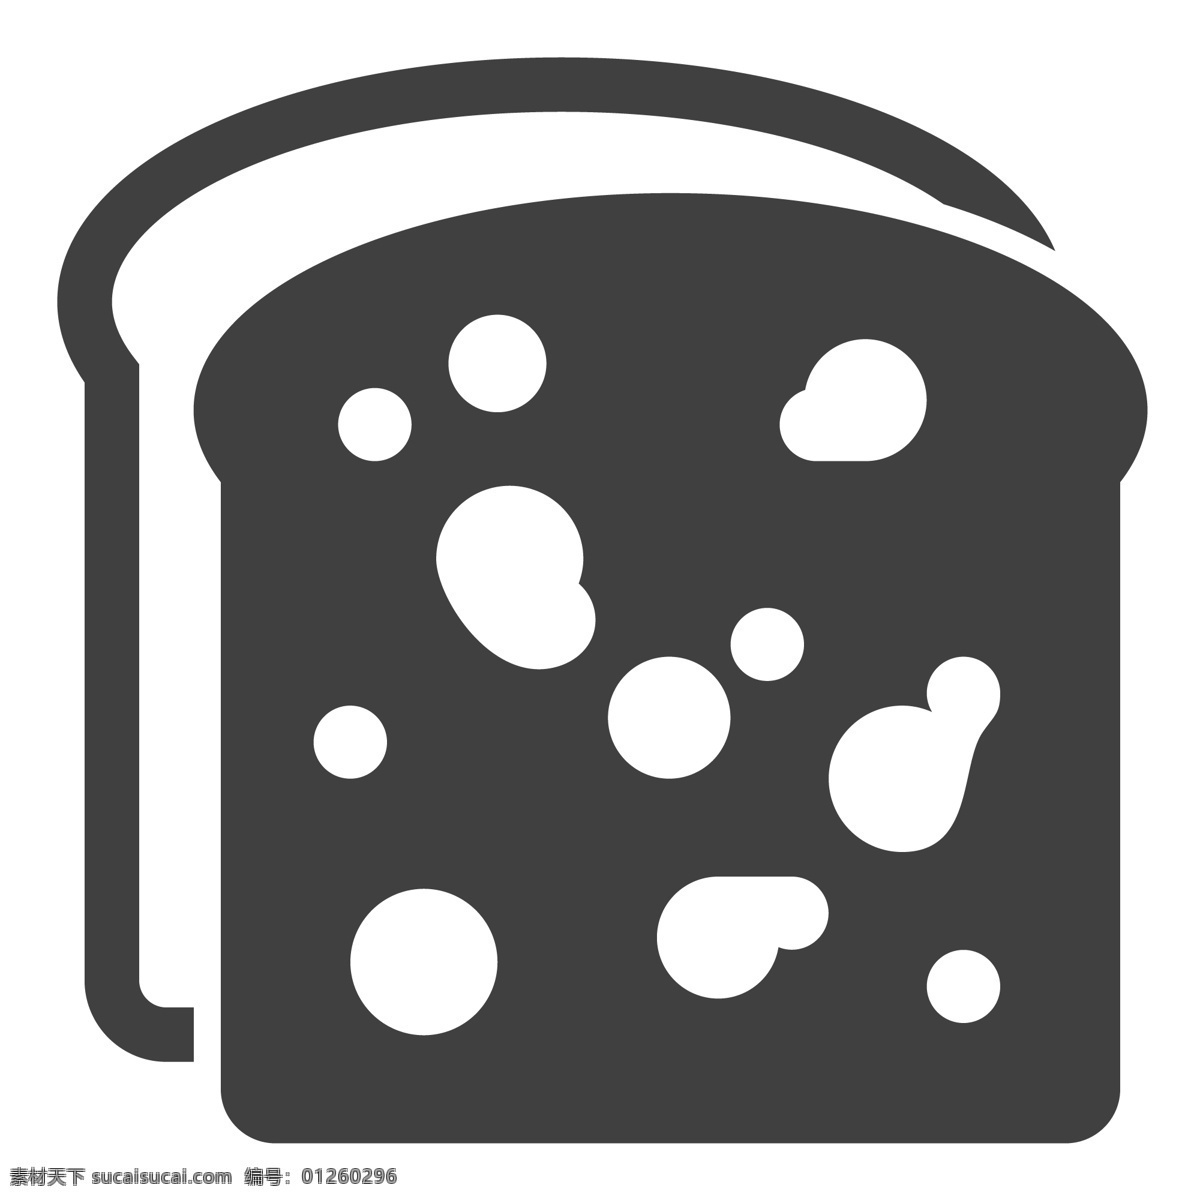 美味 早餐 面包 吃的 生活图标 卡通图标 黑色的图标 手机图标 智能图标设计